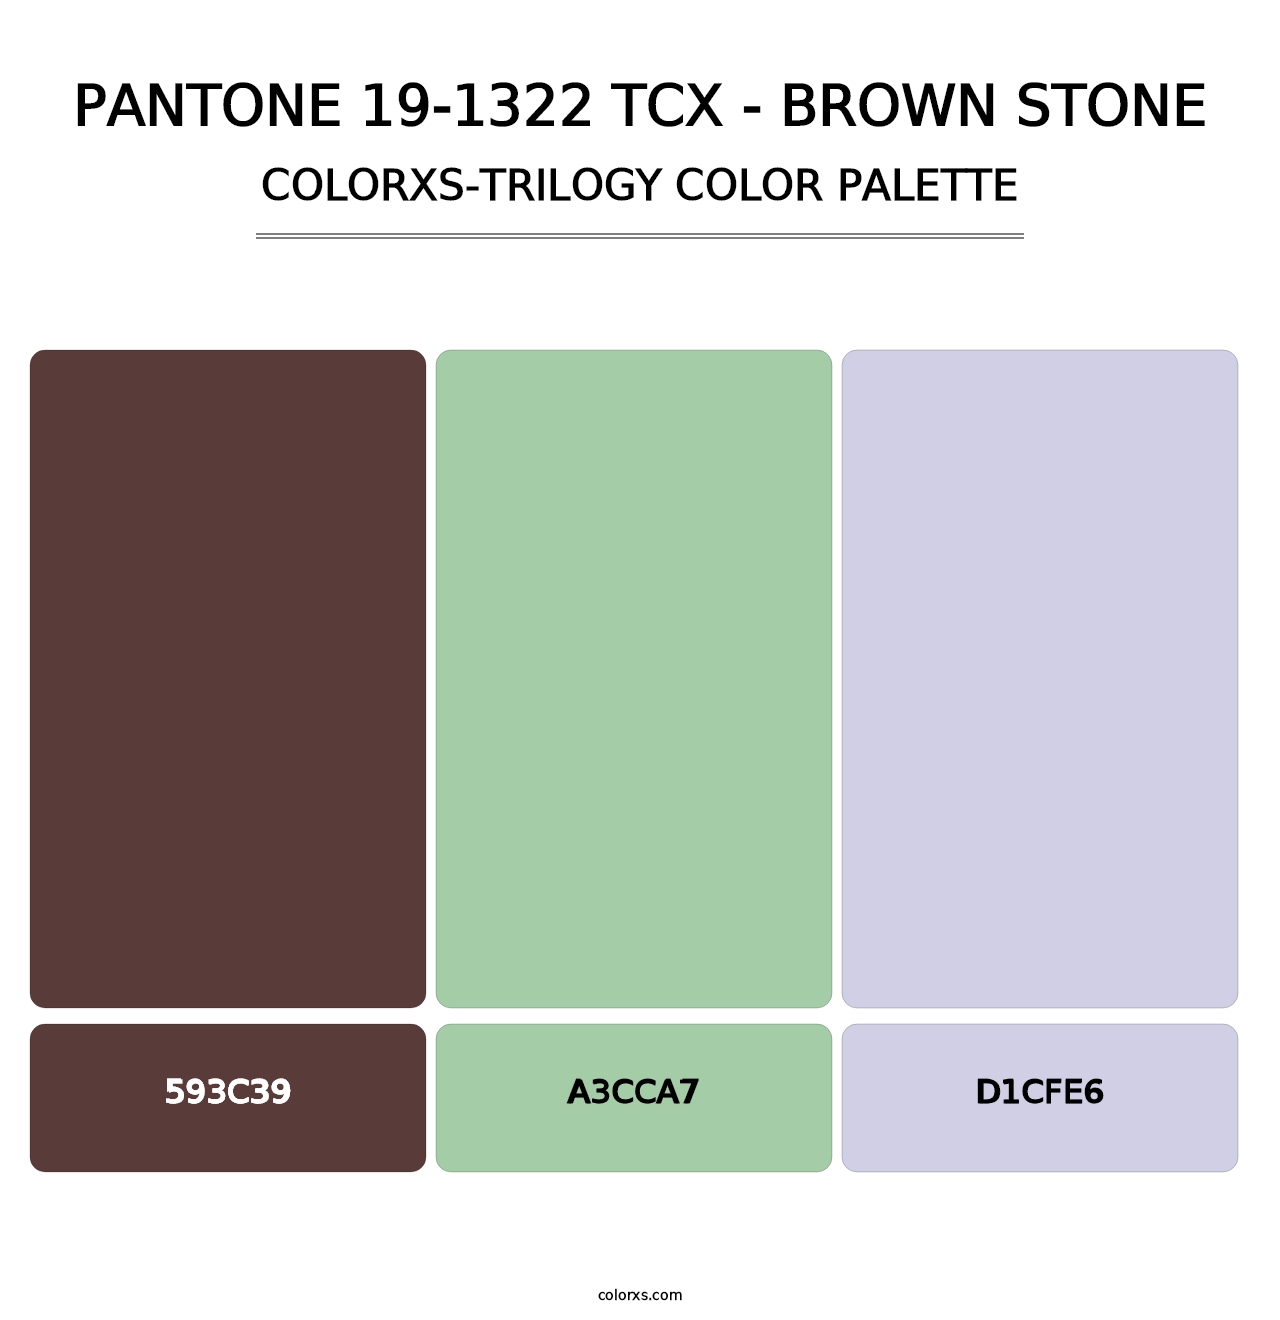 PANTONE 19-1322 TCX - Brown Stone - Colorxs Trilogy Palette